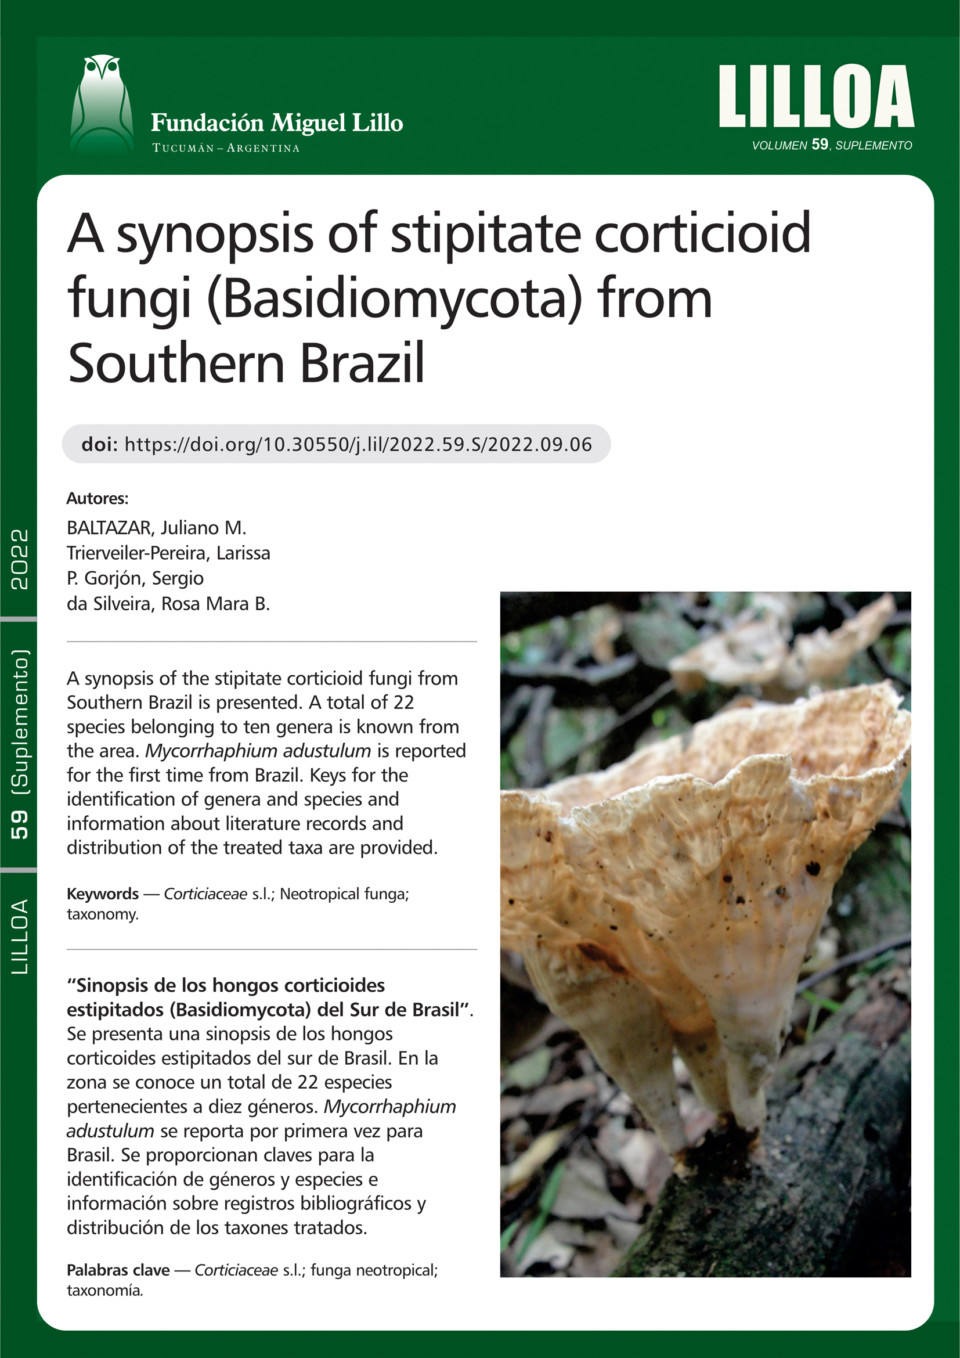 Sinopsis de los hongos corticioides estipitados (Basidiomycota) del Sur de Brasil